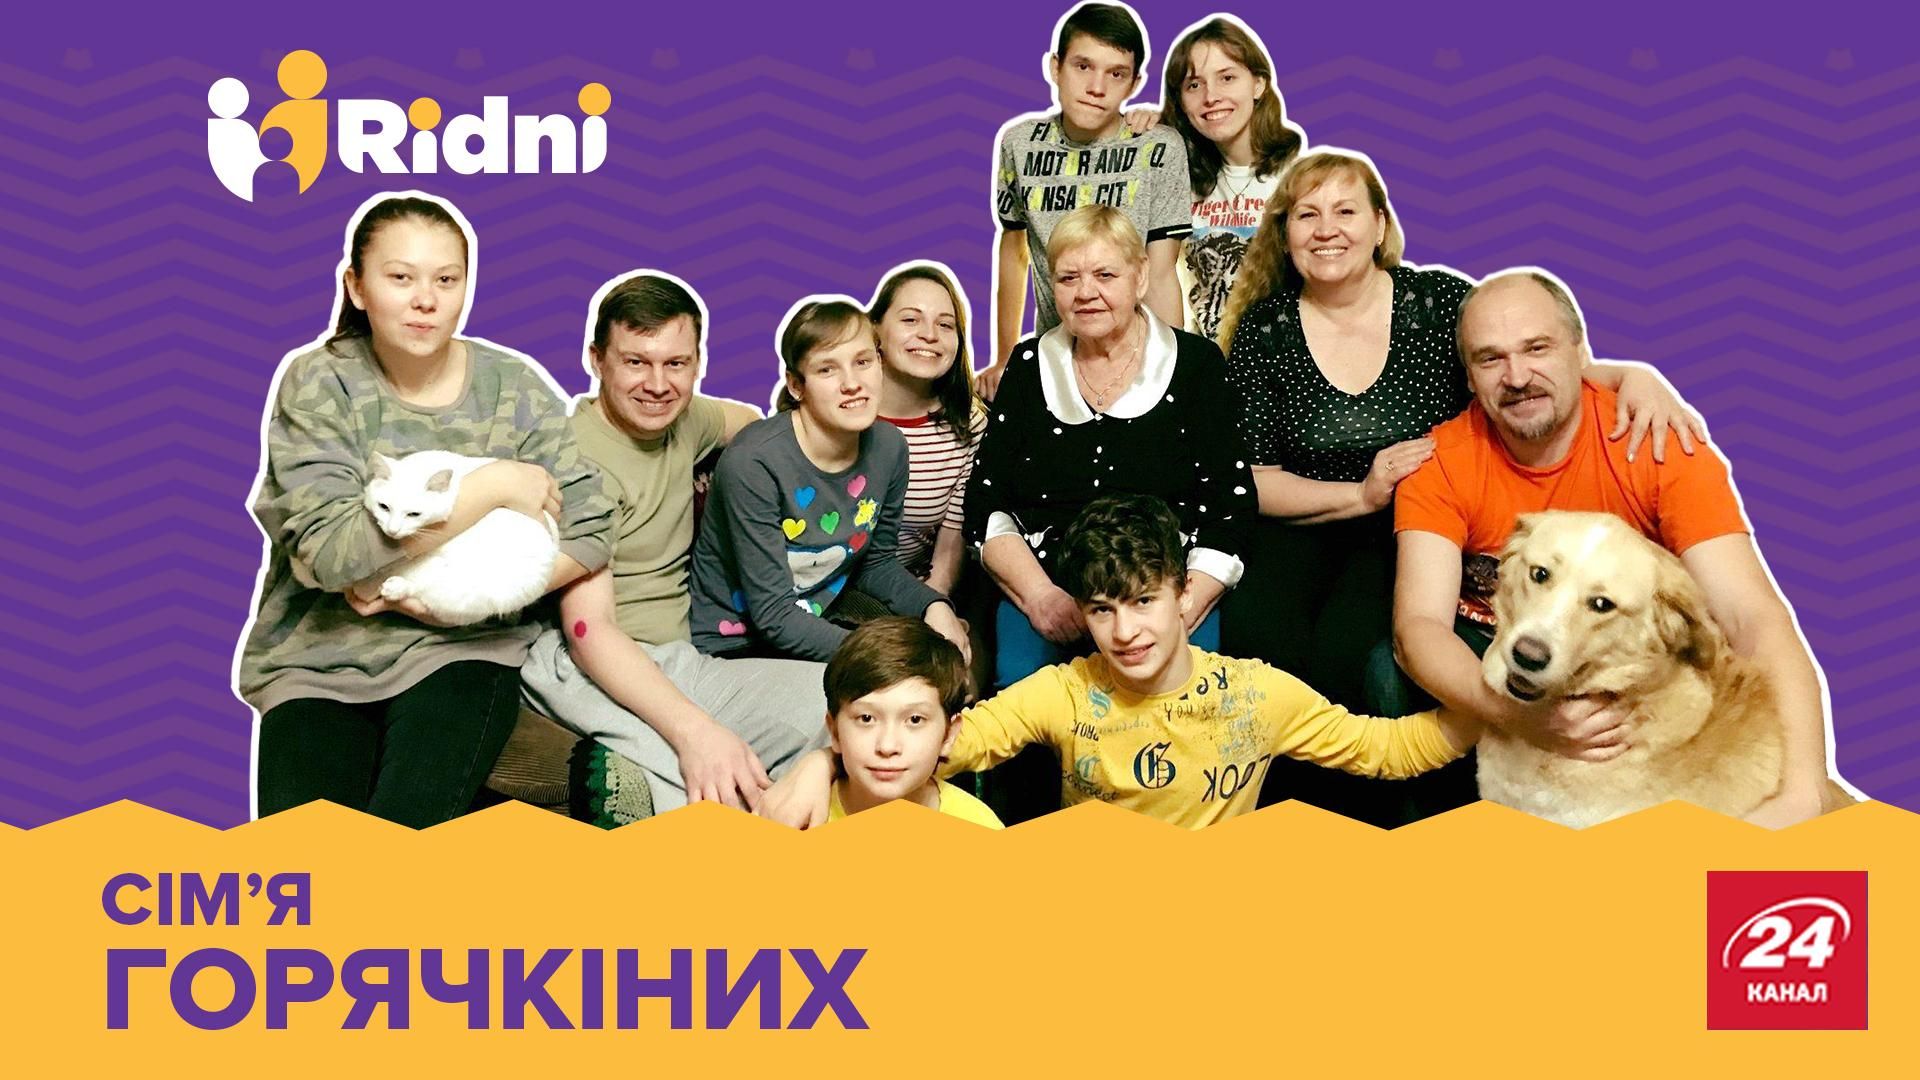 Довелося тікати з Луганська через погрози: зворушлива історія сім'ї, яка усиновила 8 дітей